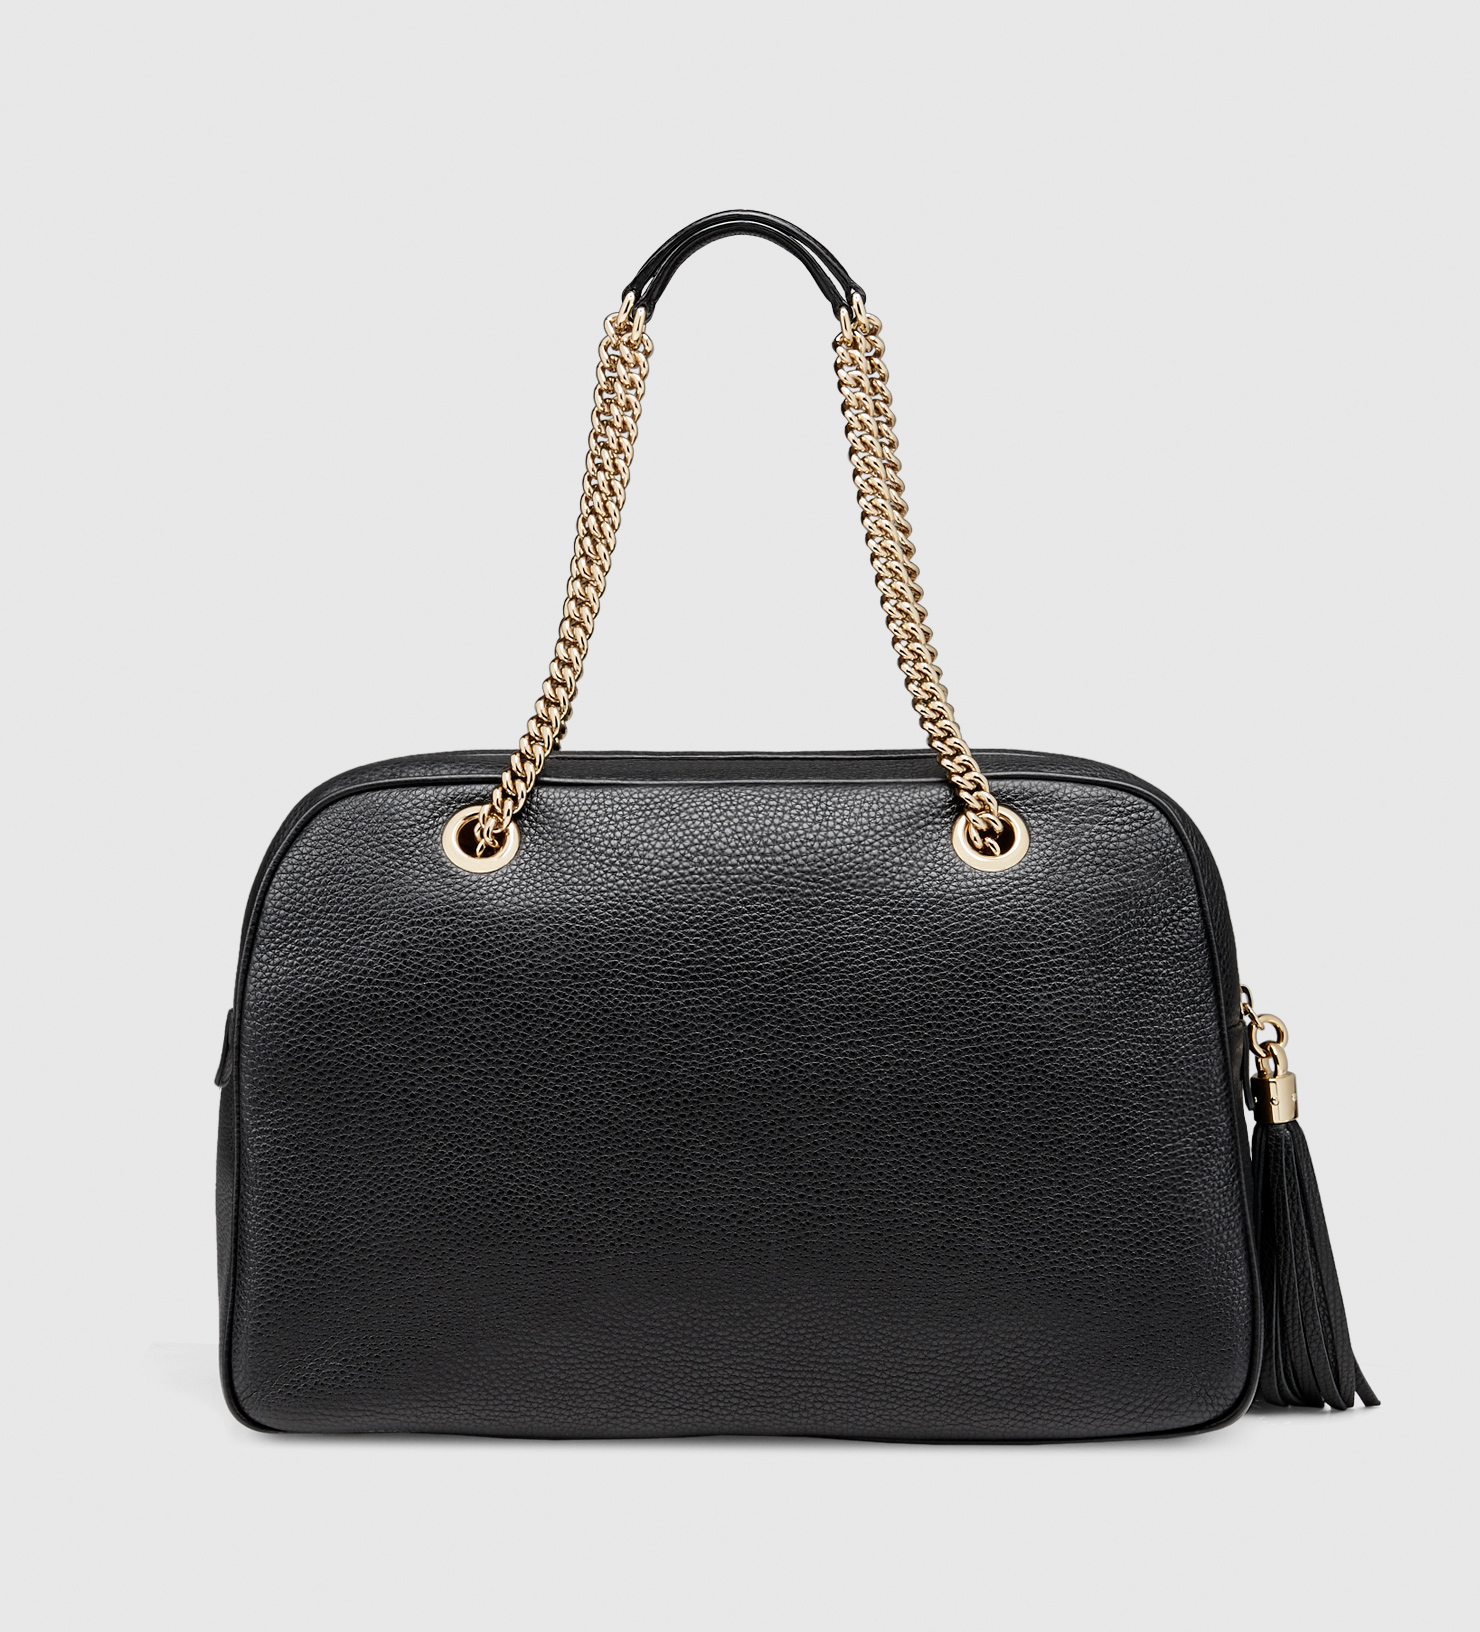 Gucci Soho Leather Shoulder Bag in Black - Lyst